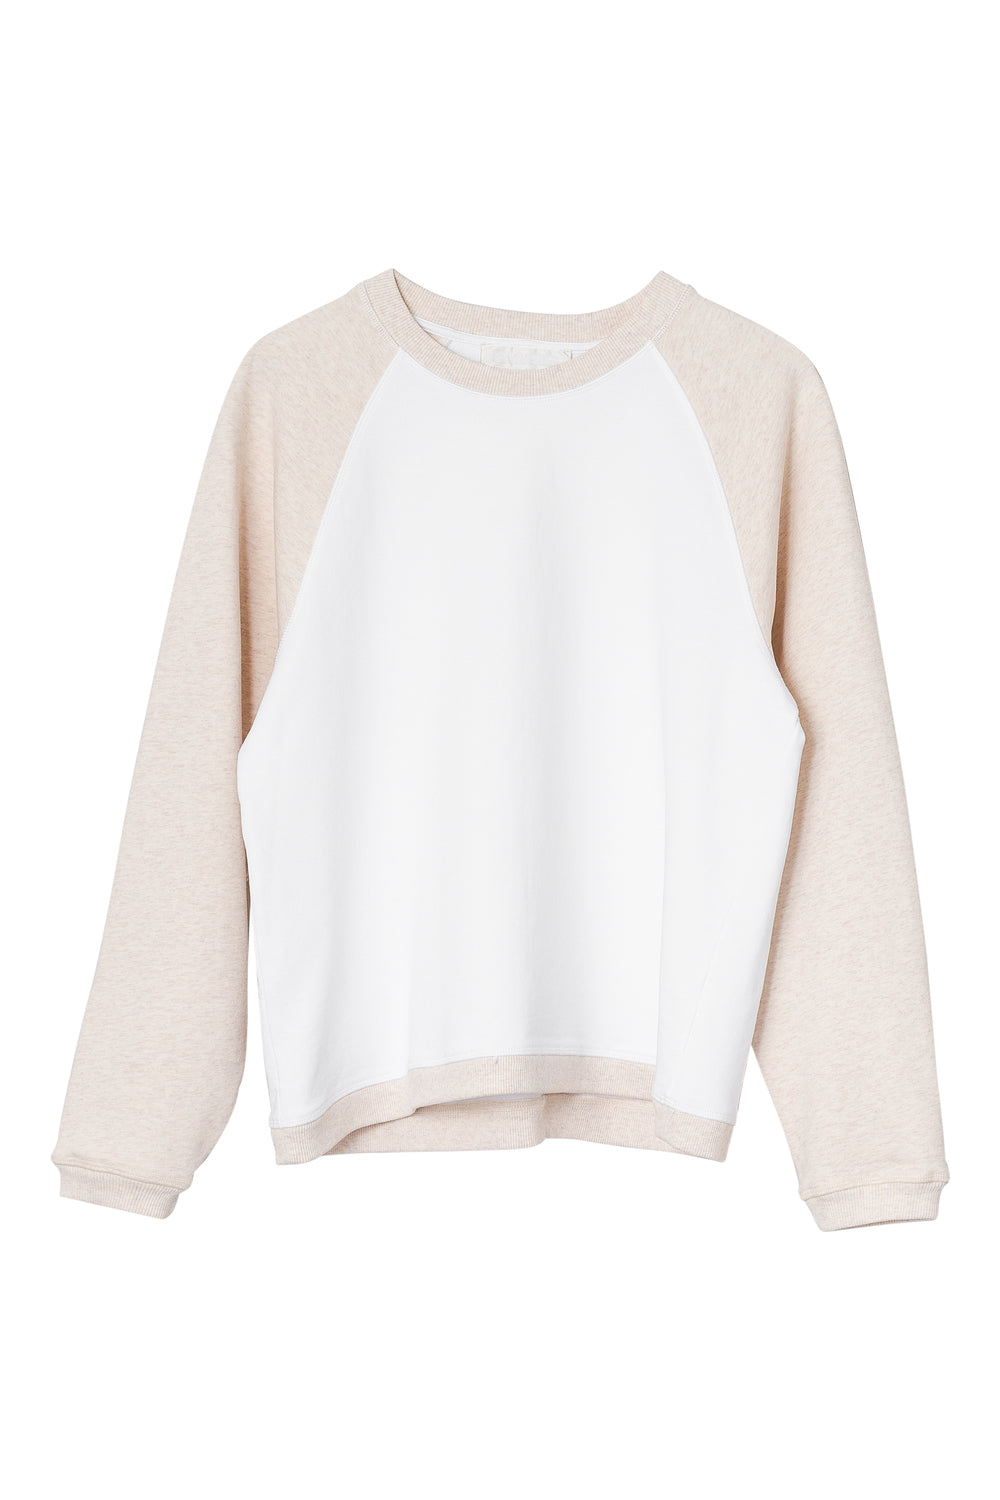 Seijaku Sweatshirt - Bright White Block